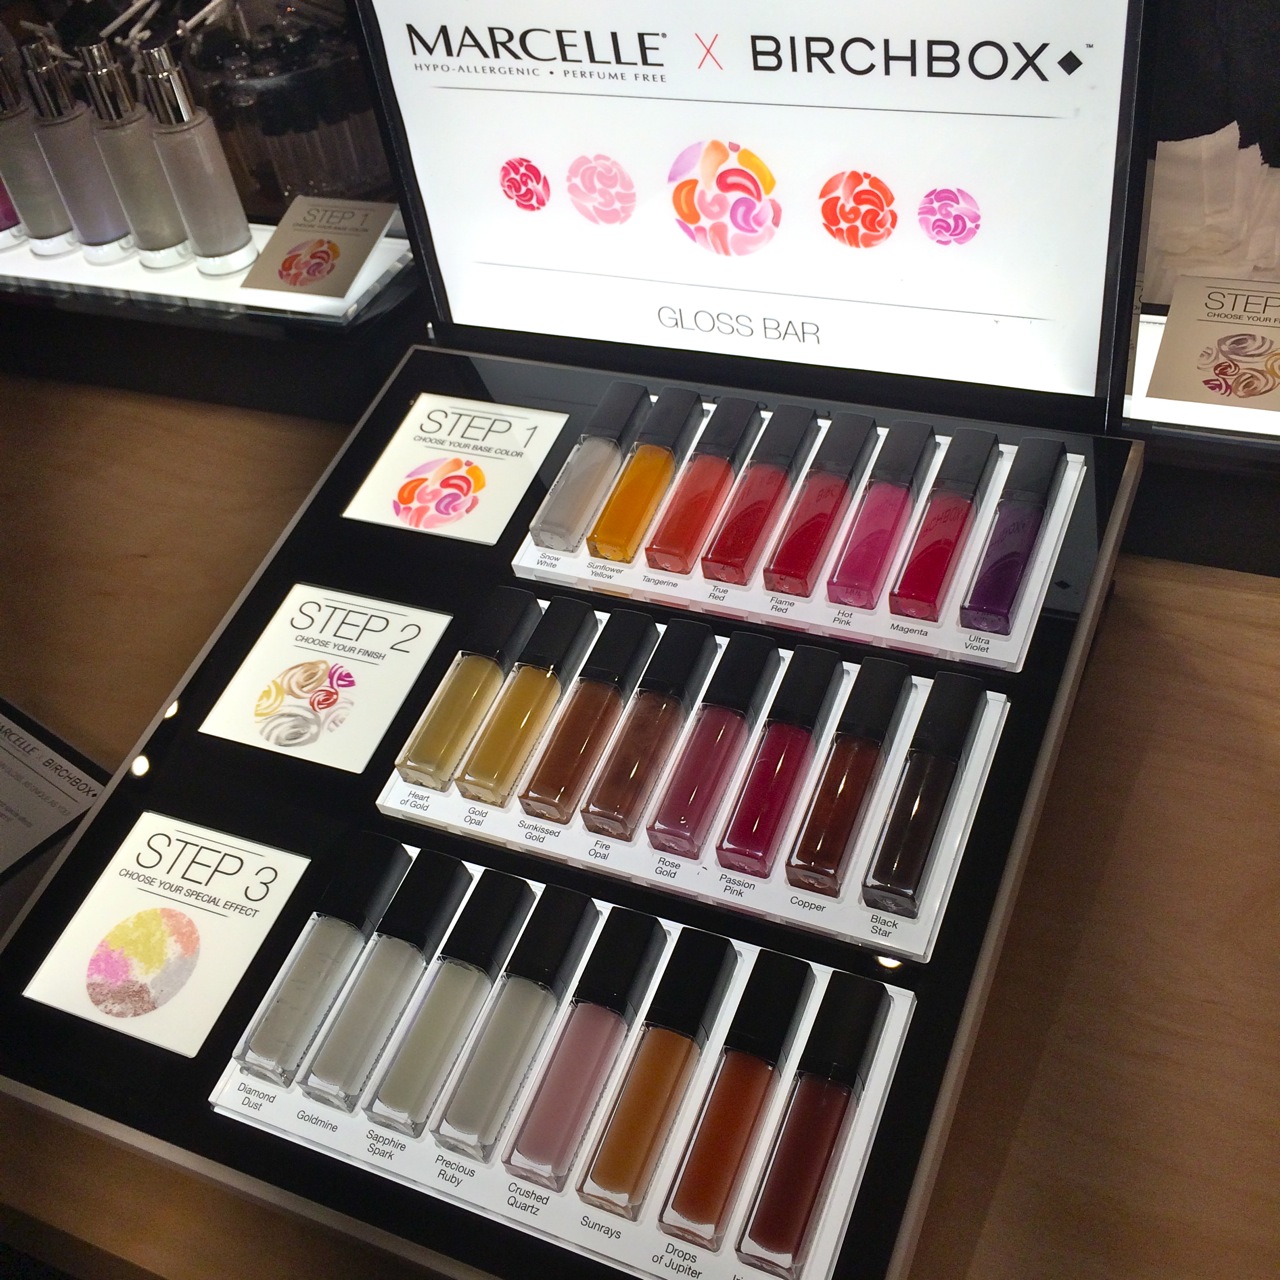 Marcelle x Birchbox